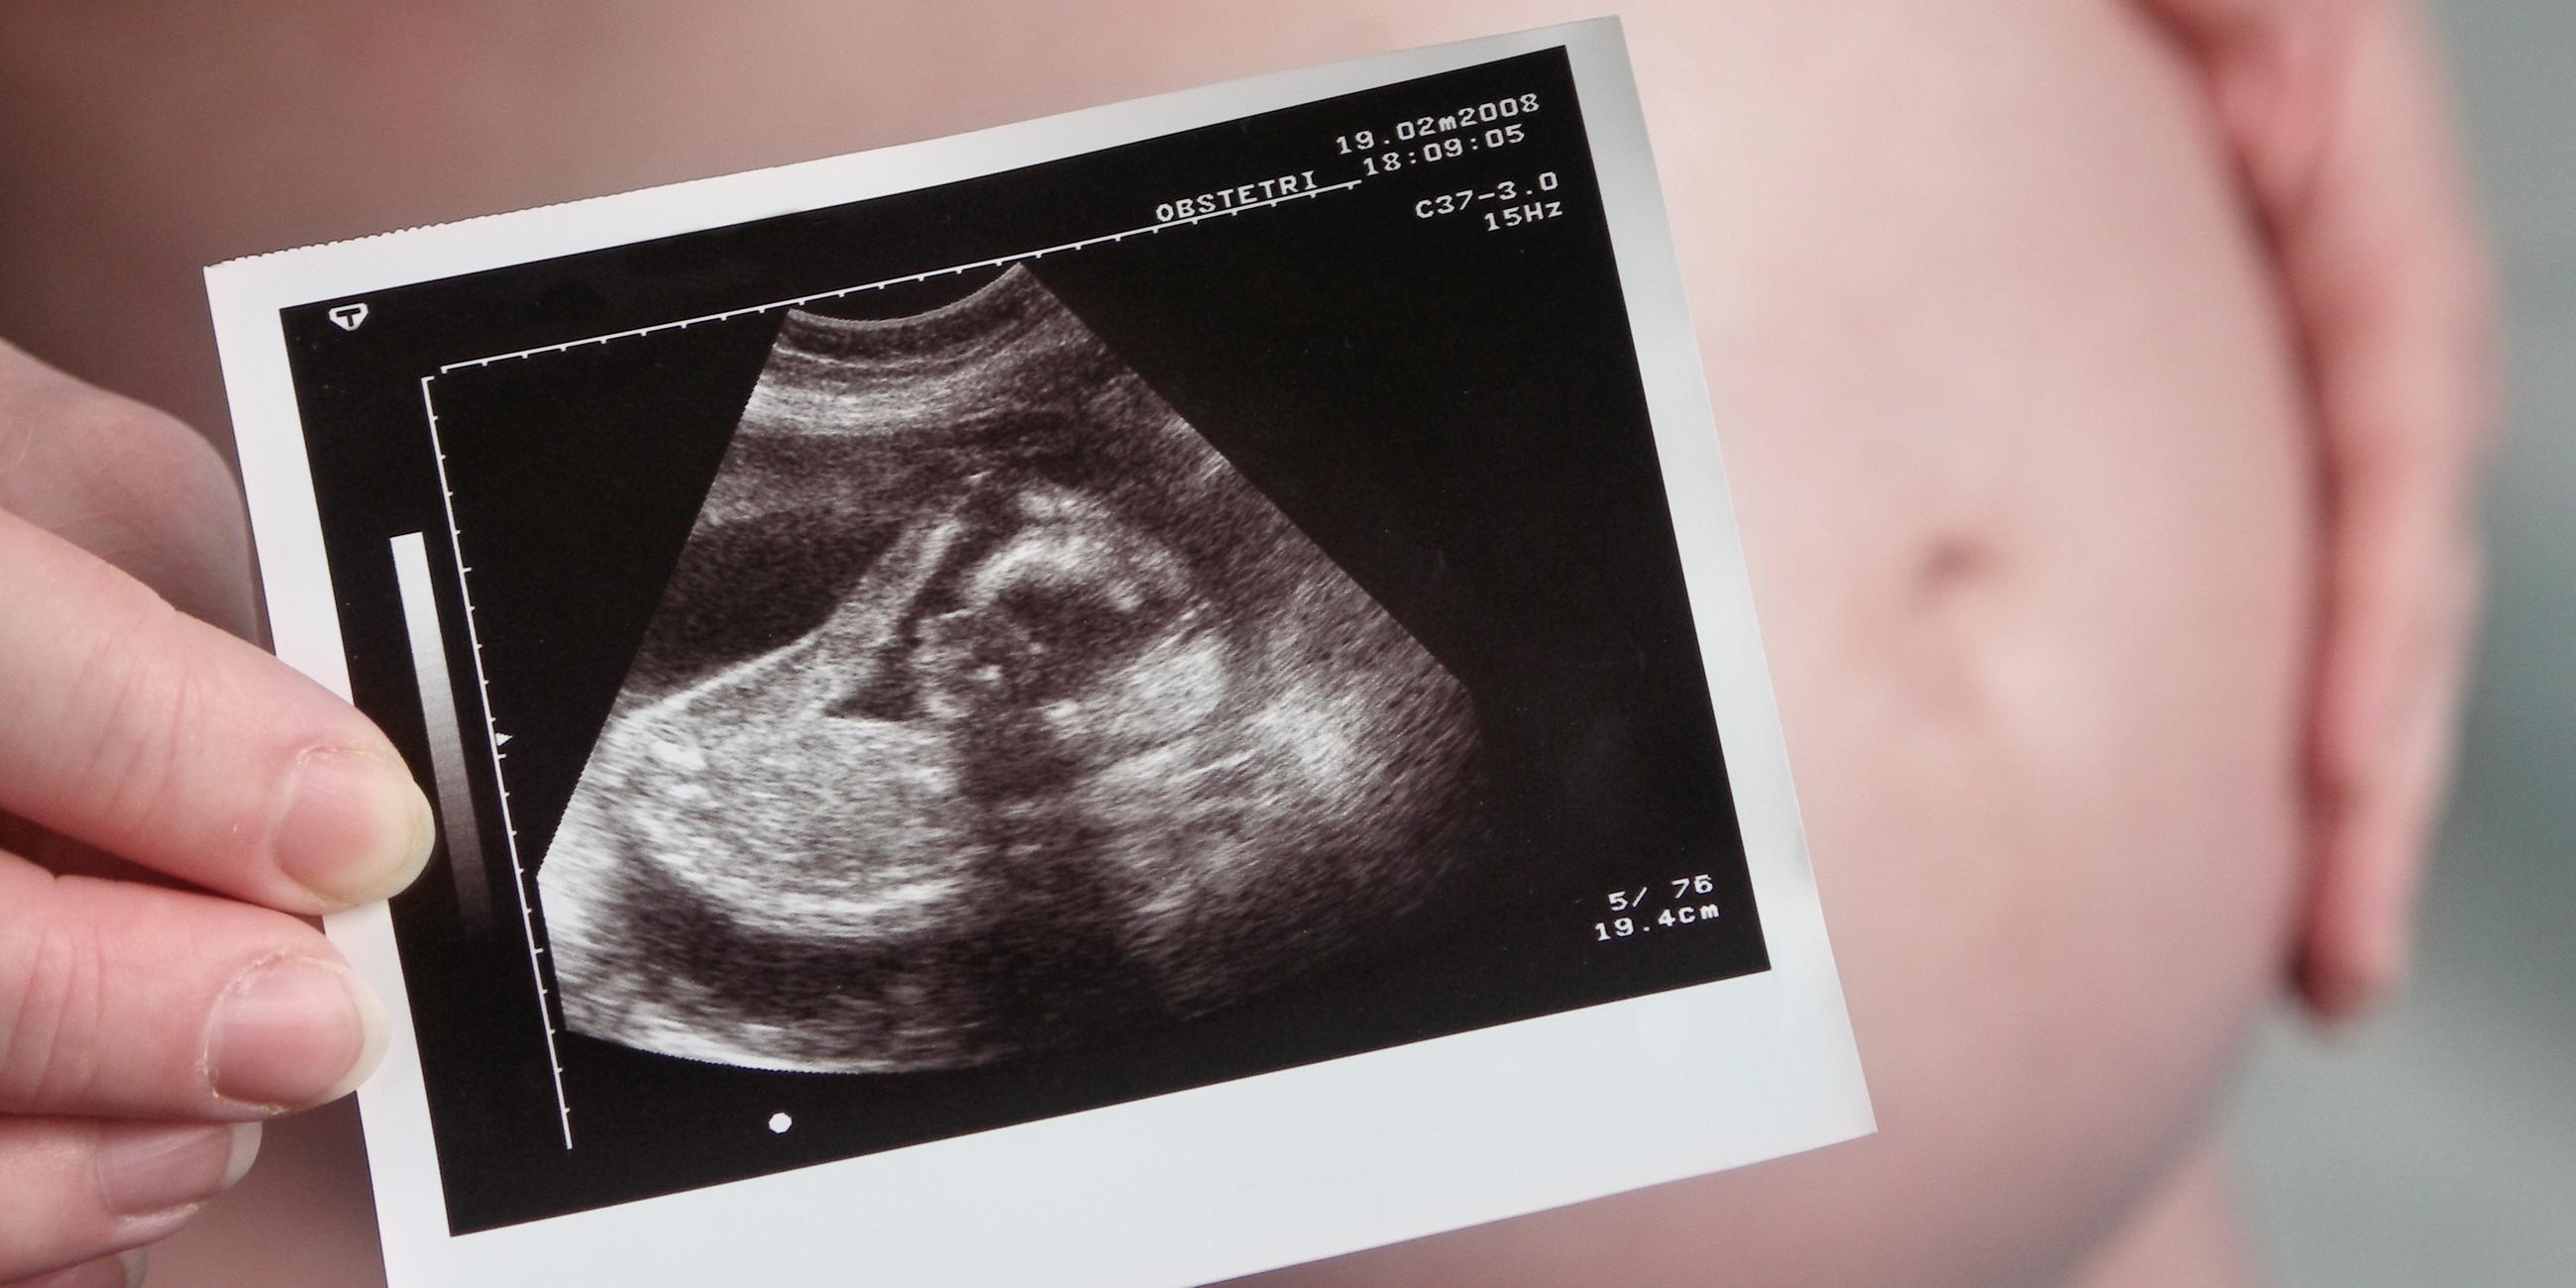 Im Hintergrund sieht man einen Schwangerschaftsbauch, welcher durch ein Ultraschallbild verdeckt wird.